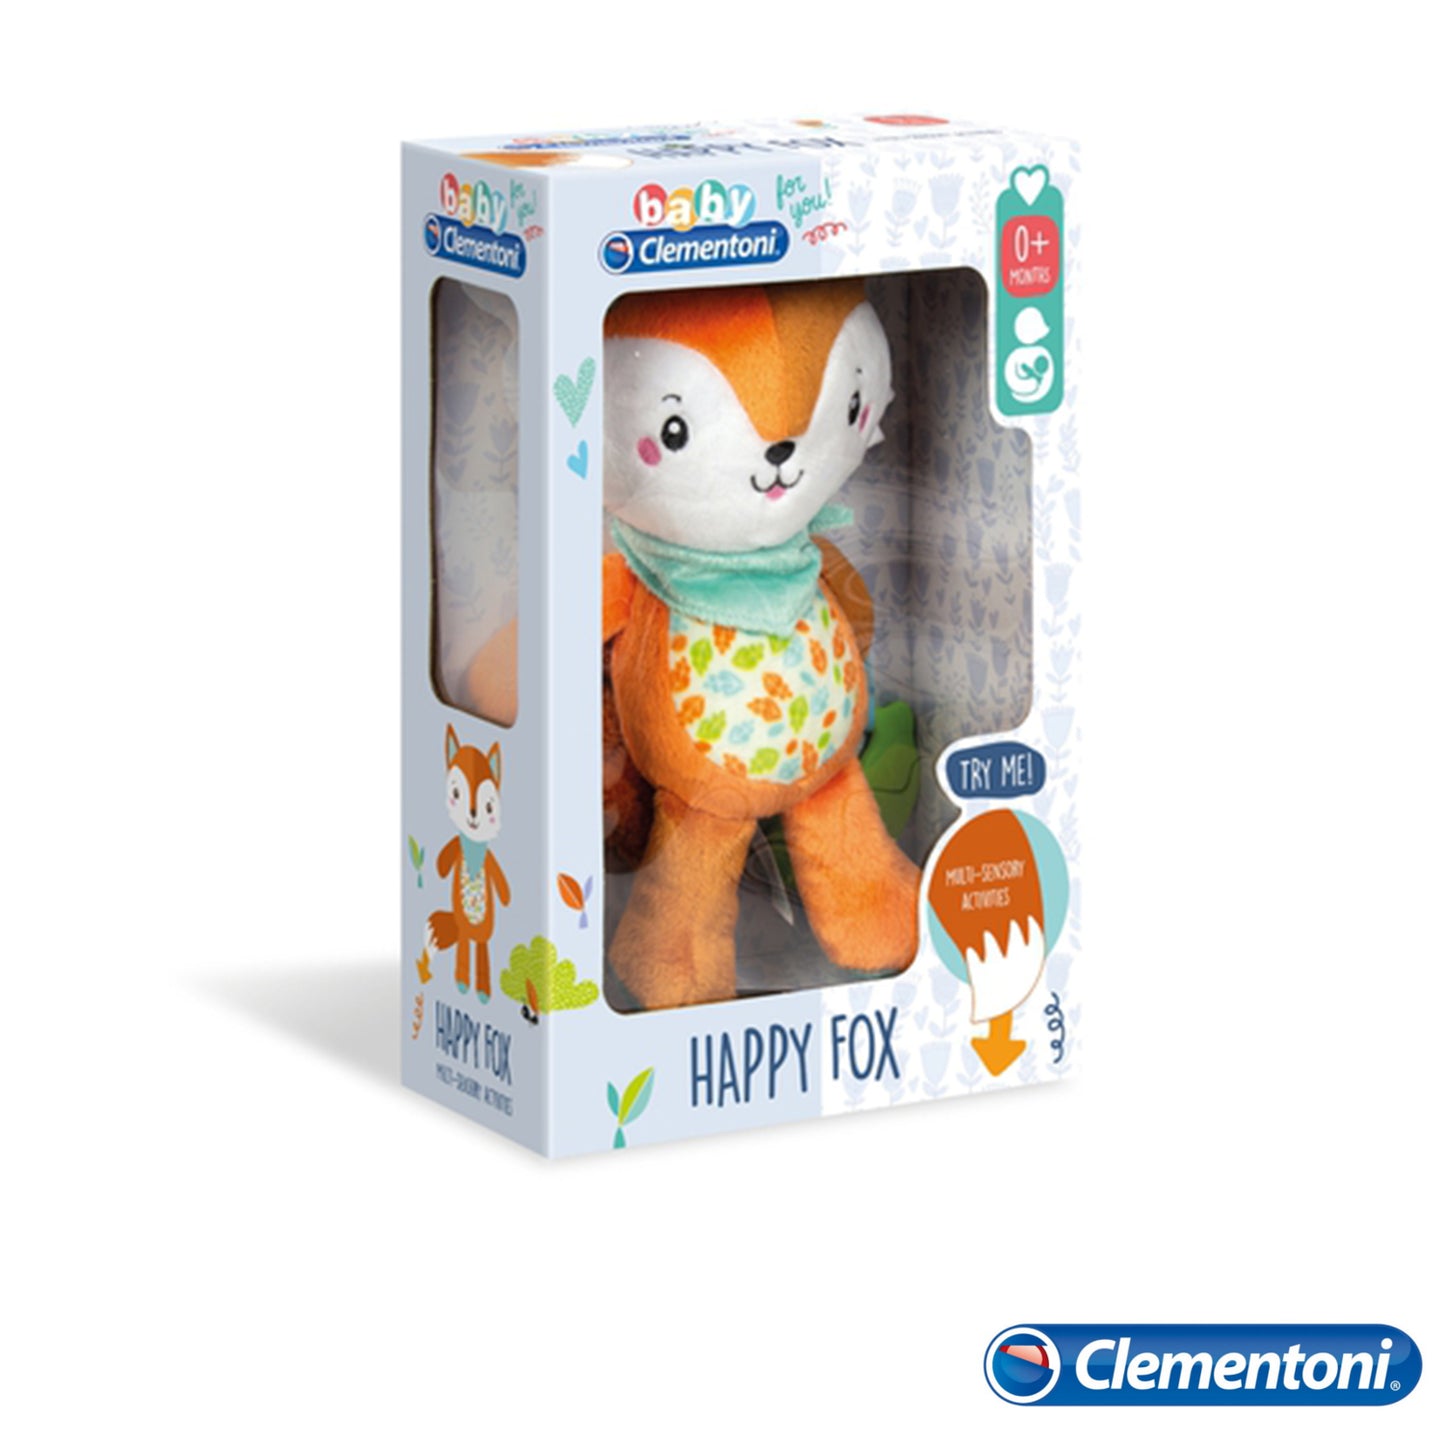 Clementoni - Happy Fox Activity Plush 17271